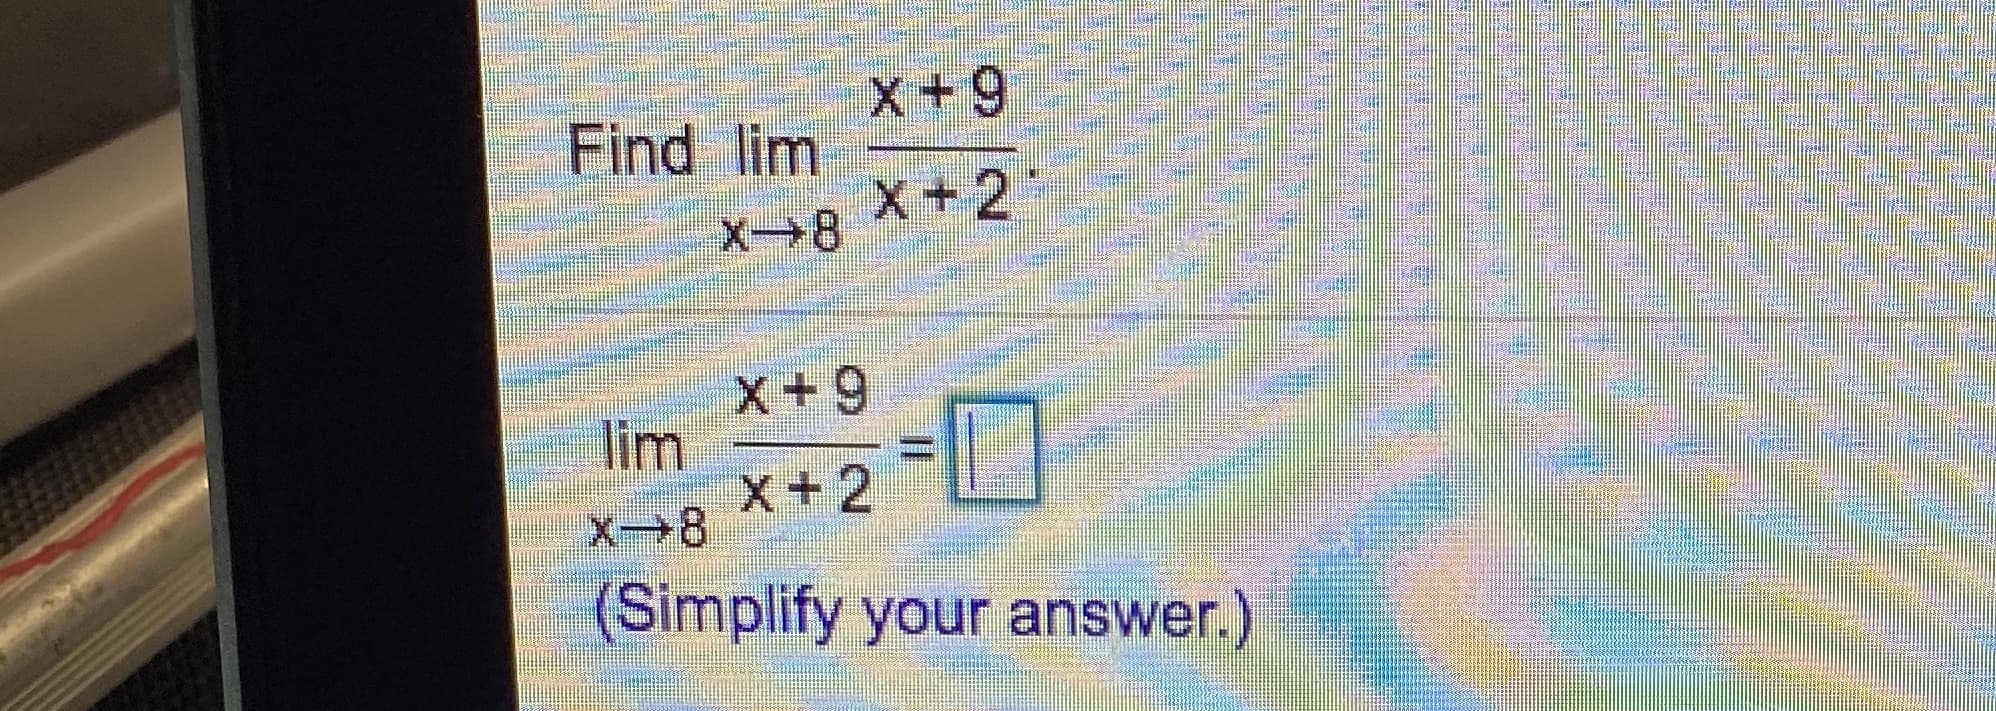 x+9
Find lim
X + 2
X→8
X+9
lim
x+2
X8
(Simplify your answer.)
